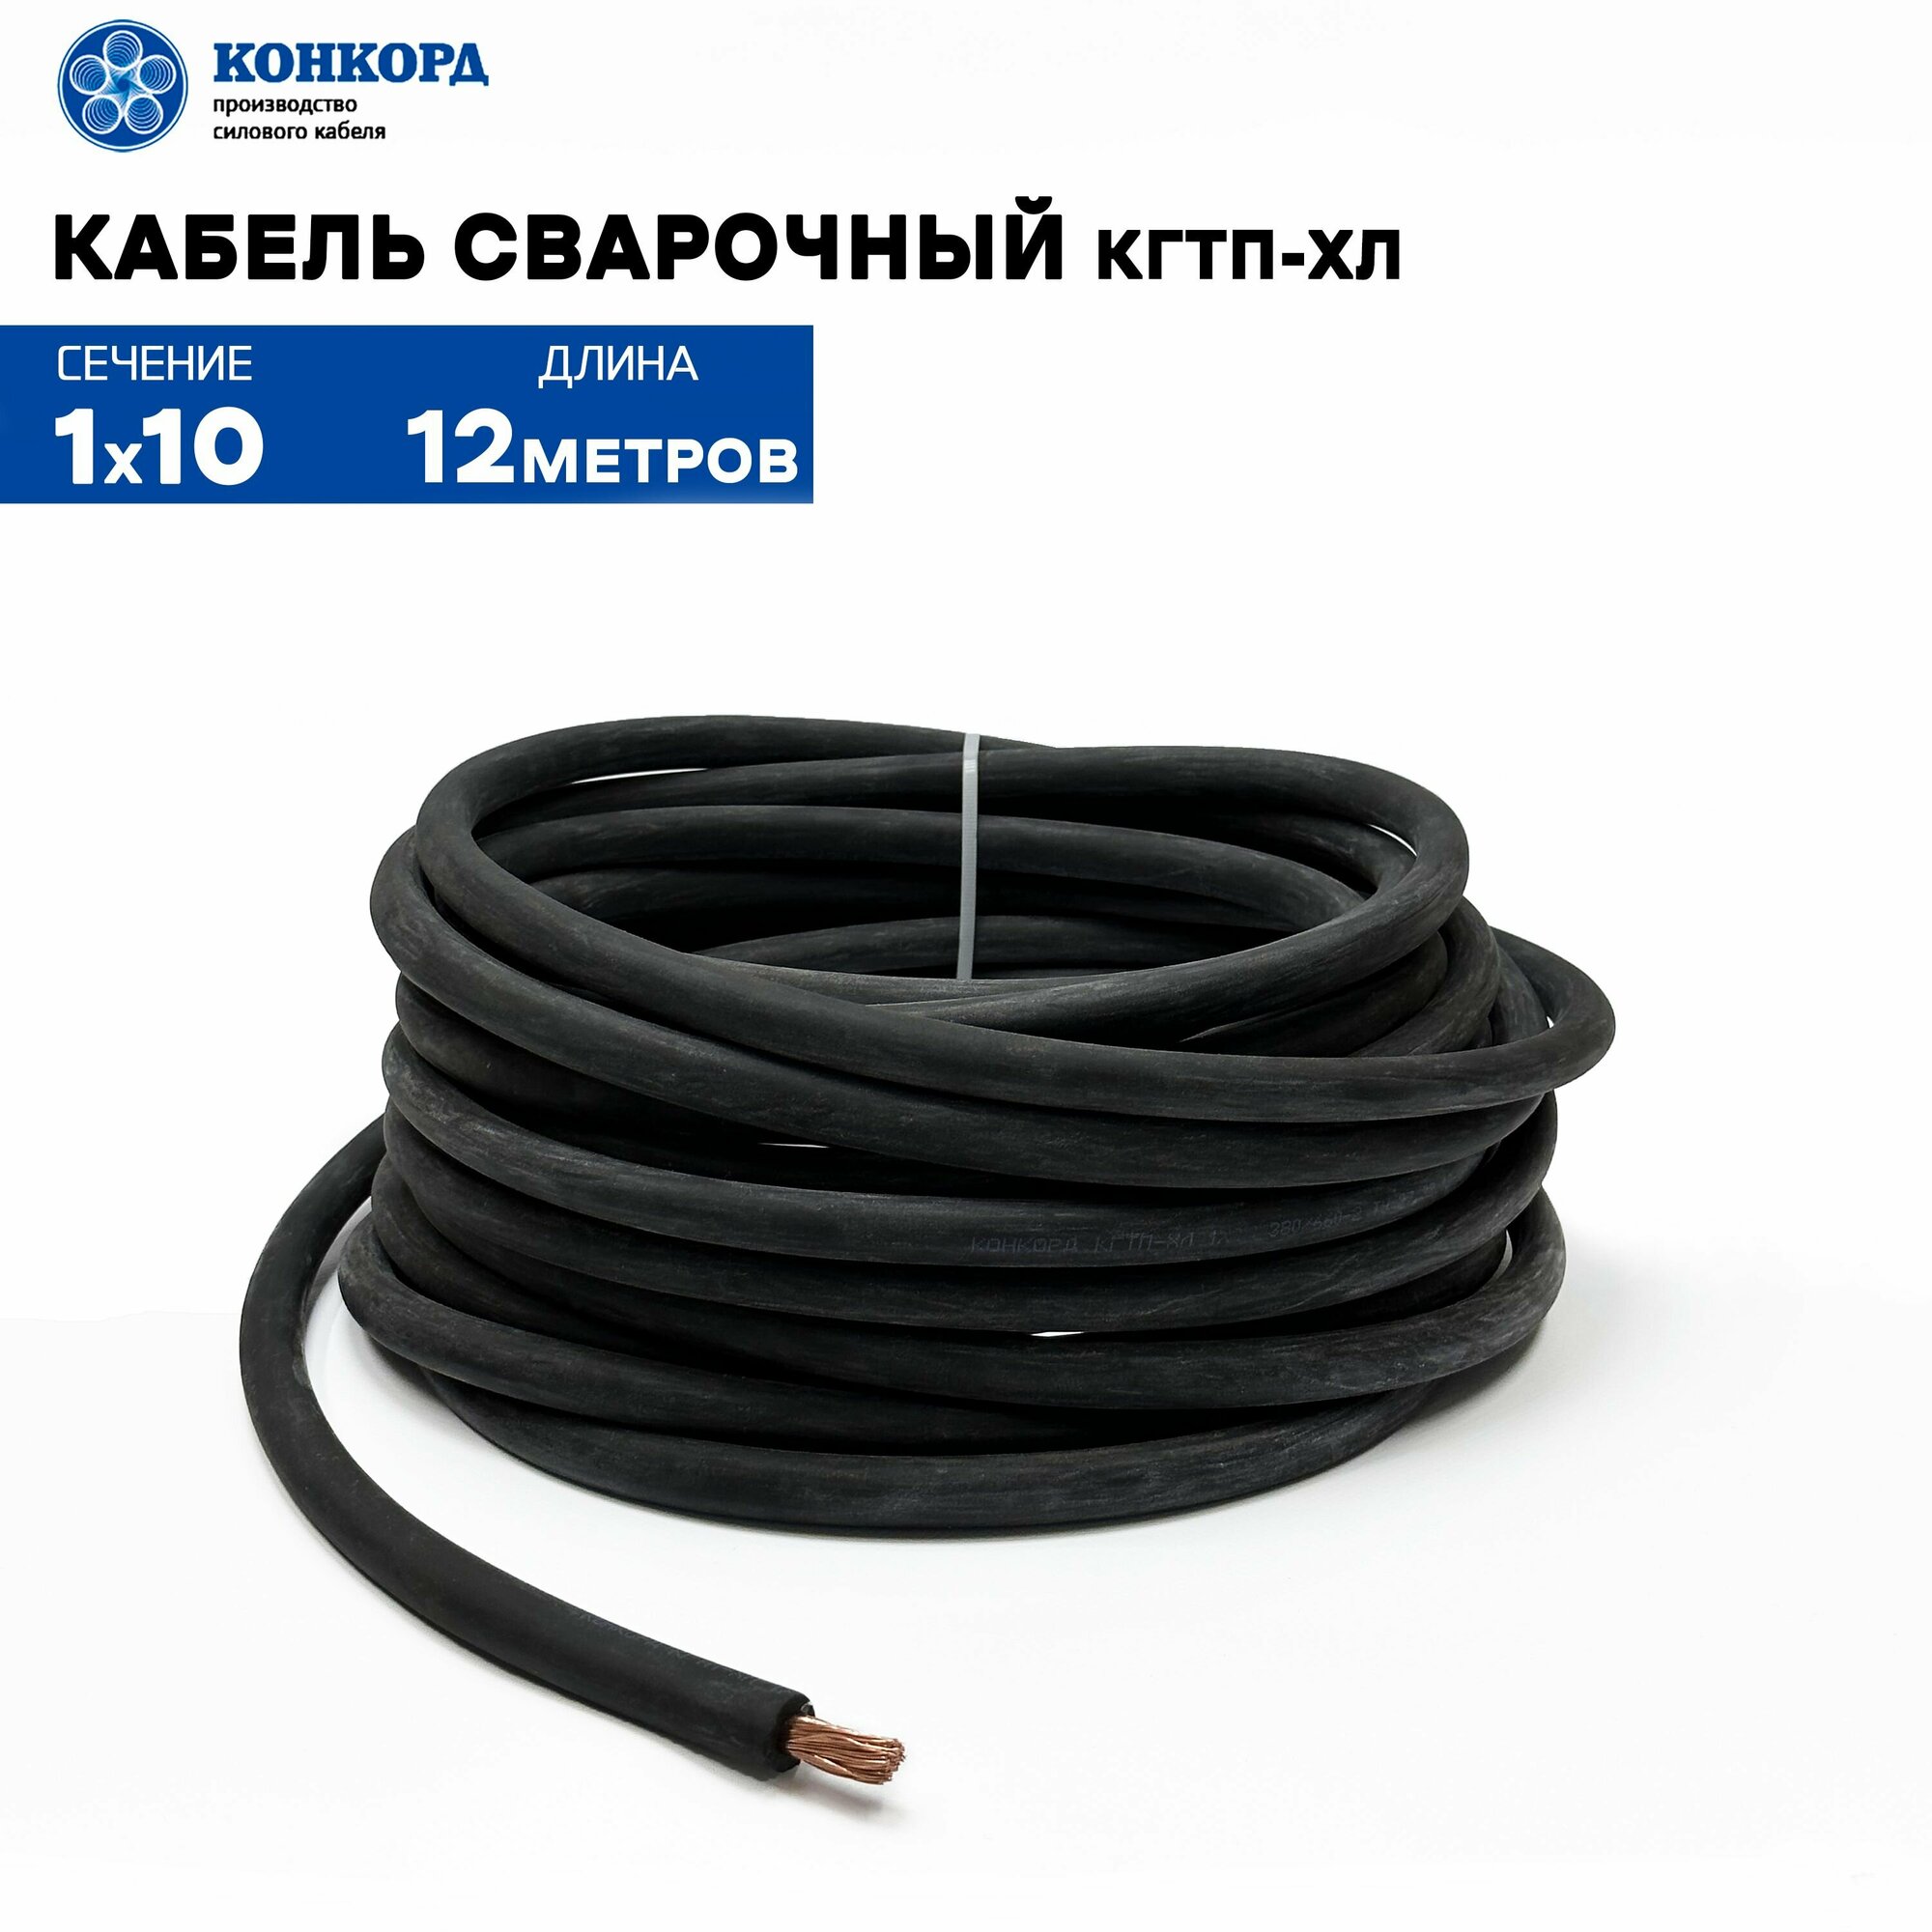 Сварочный кабель КГтп-ХЛ 10кв. мм 12метров.